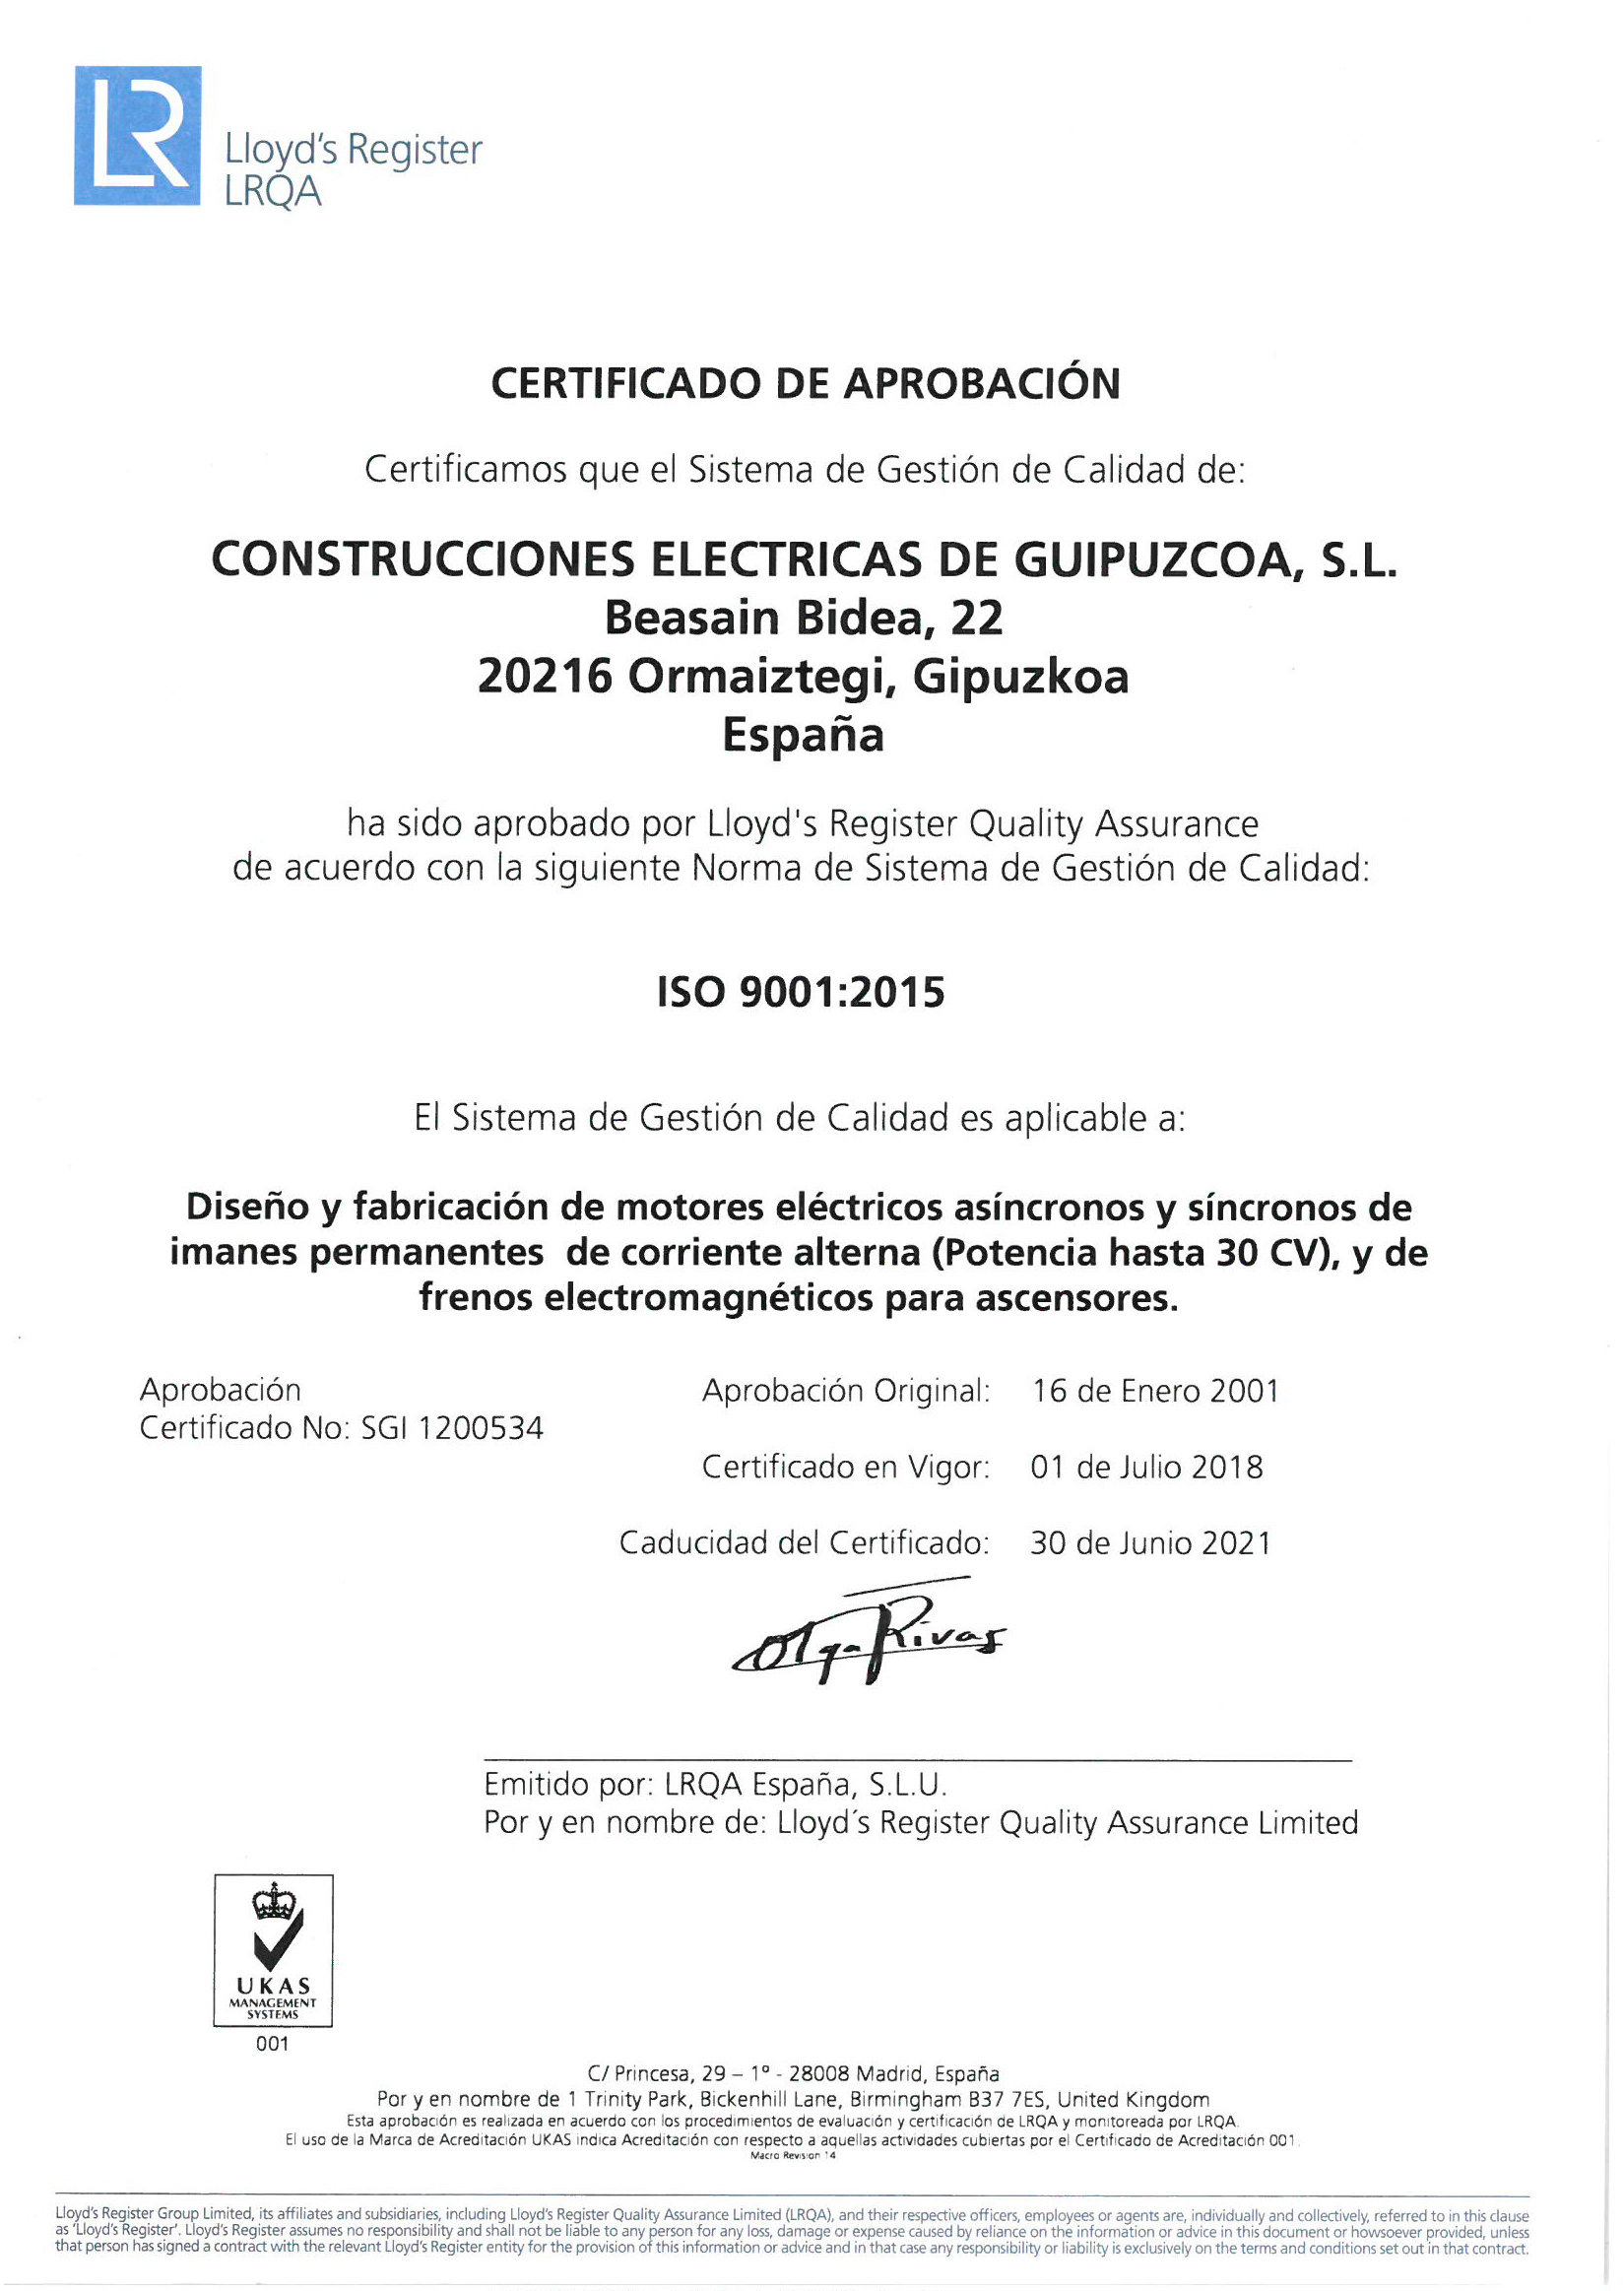 Certificado ISO 9001:2015